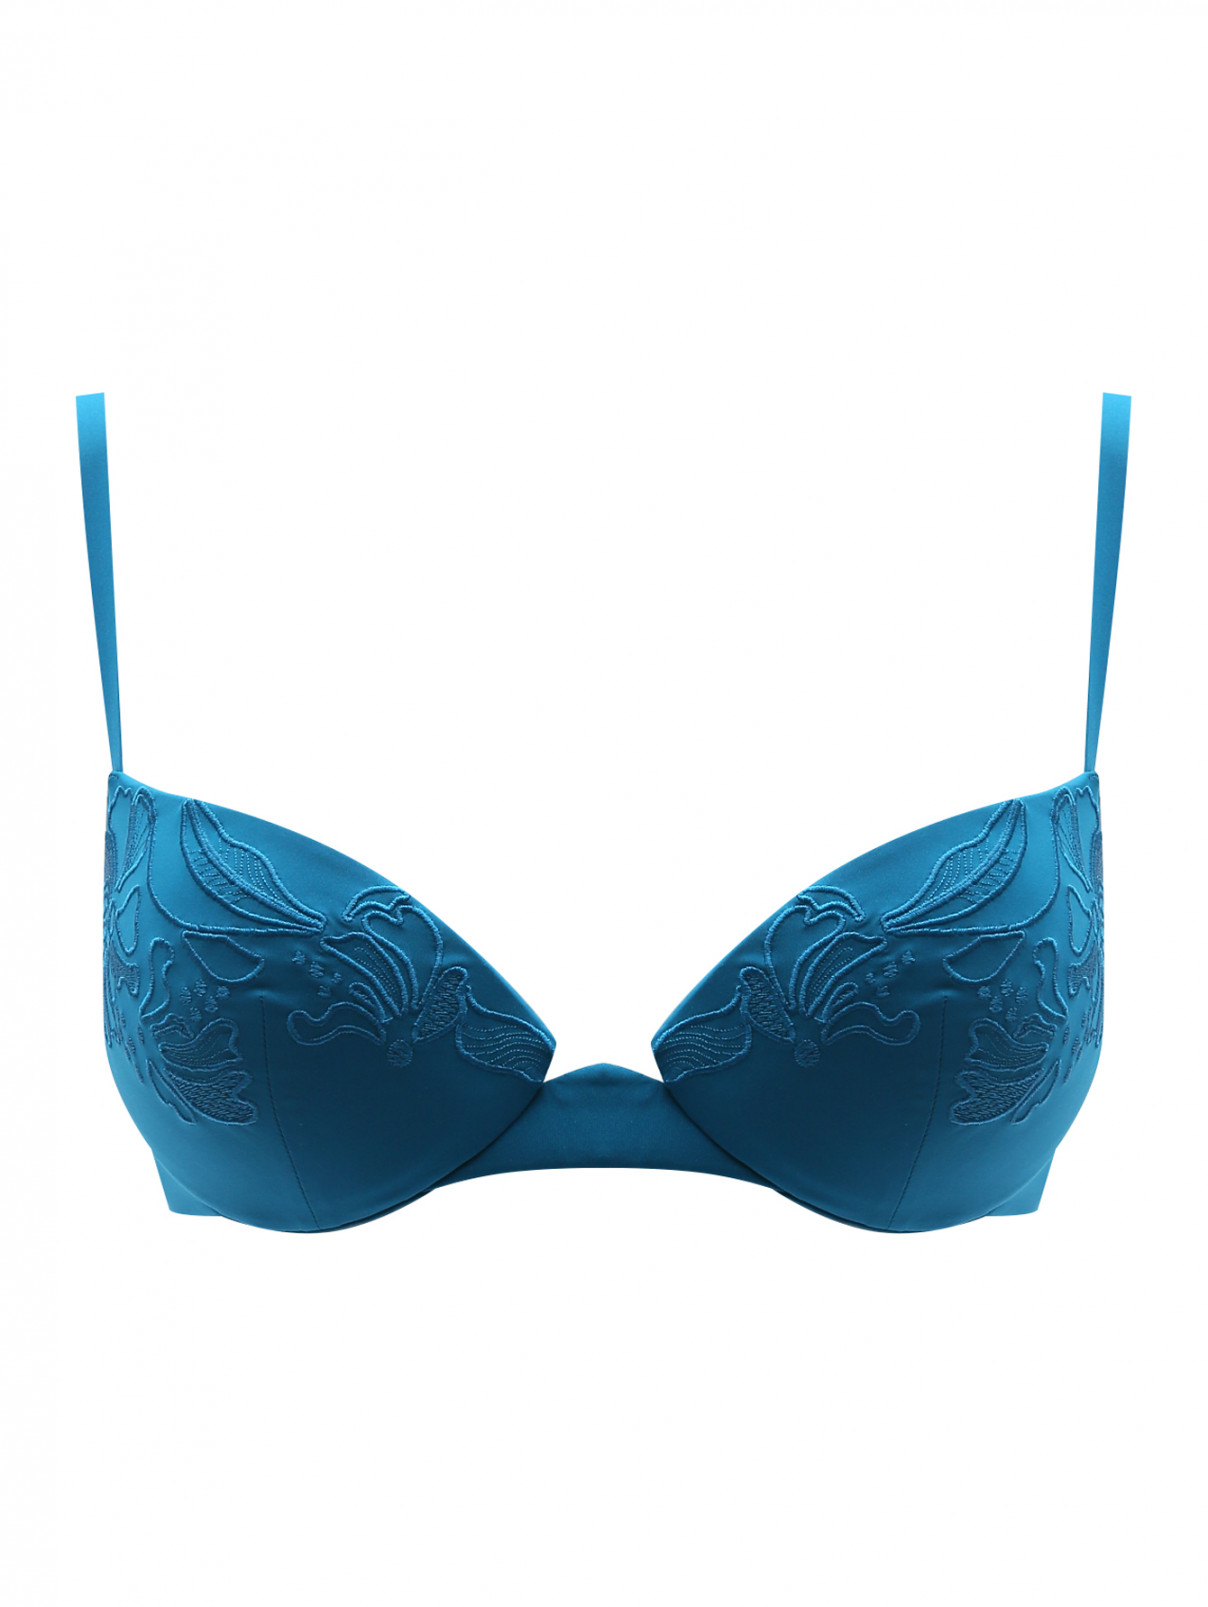 La Perla синий купальник верх с вышивкой (541331). Цена: 24 980 ₽